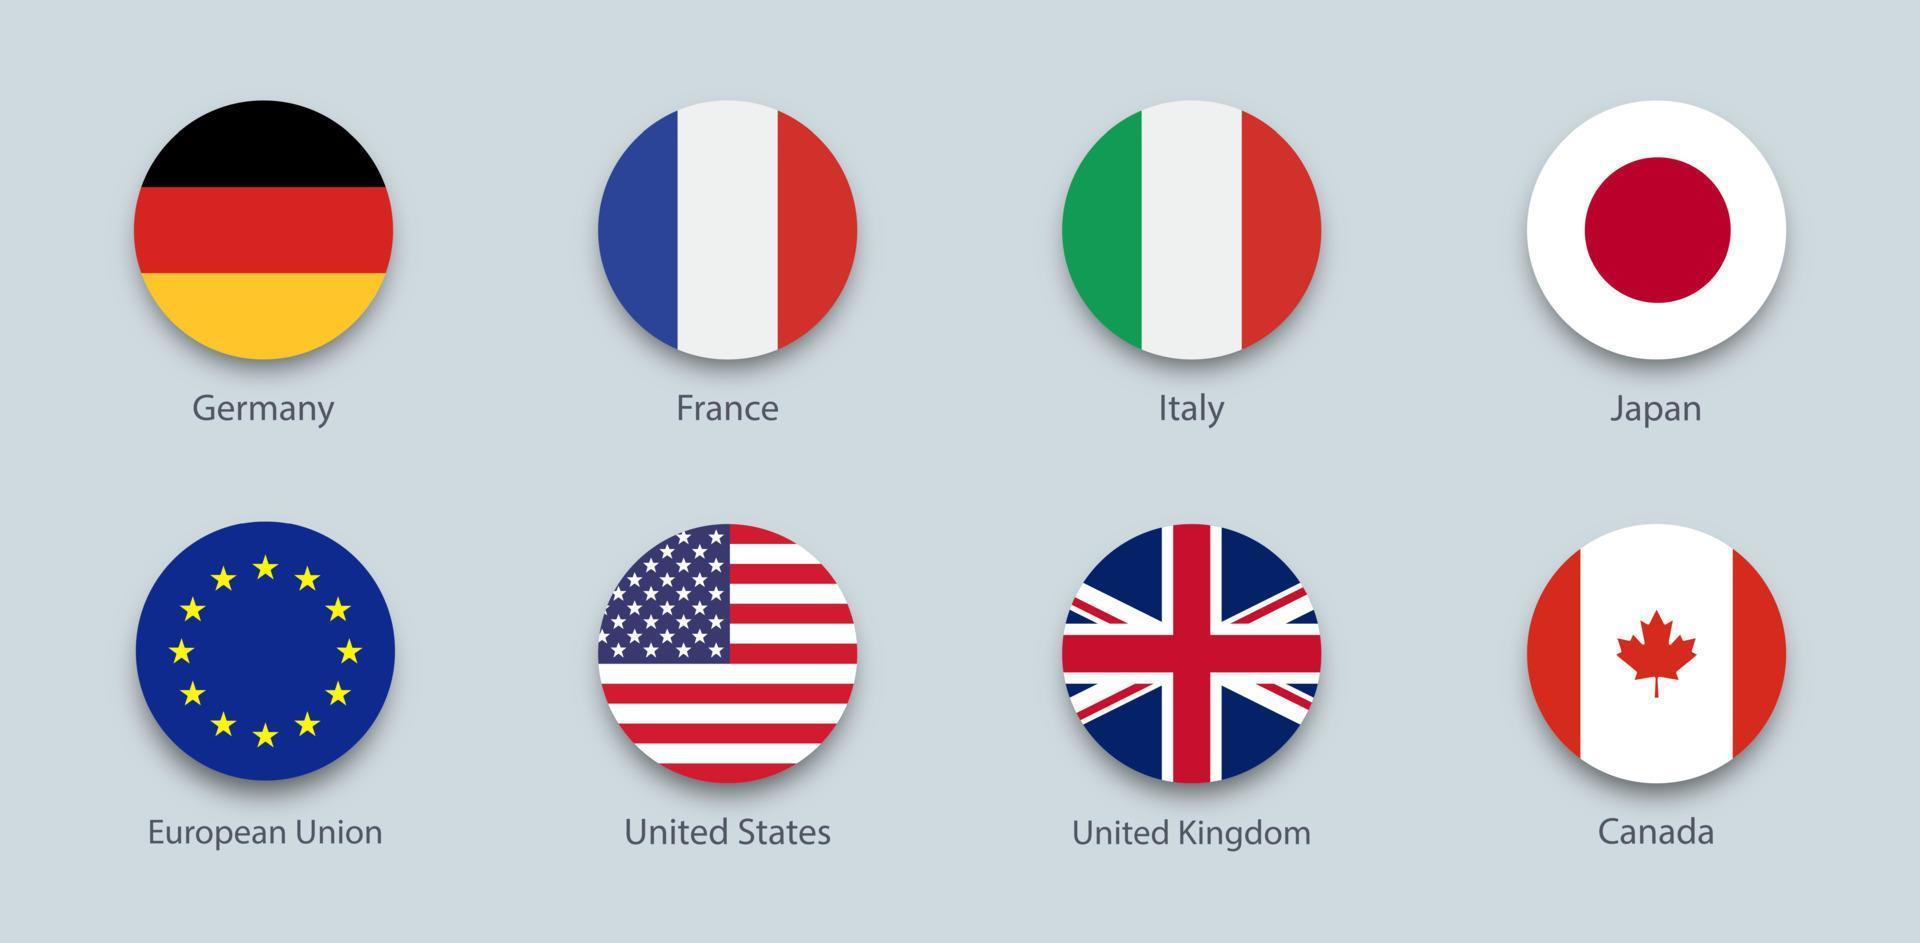 g7 eller grupp om sju. internationella politiska unionen av de största avancerade ekonomierna. vektor flagga Kanada, Frankrike, Tyskland, Italien, Japan, Storbritannien, Förenta staterna. runda geometriska former.